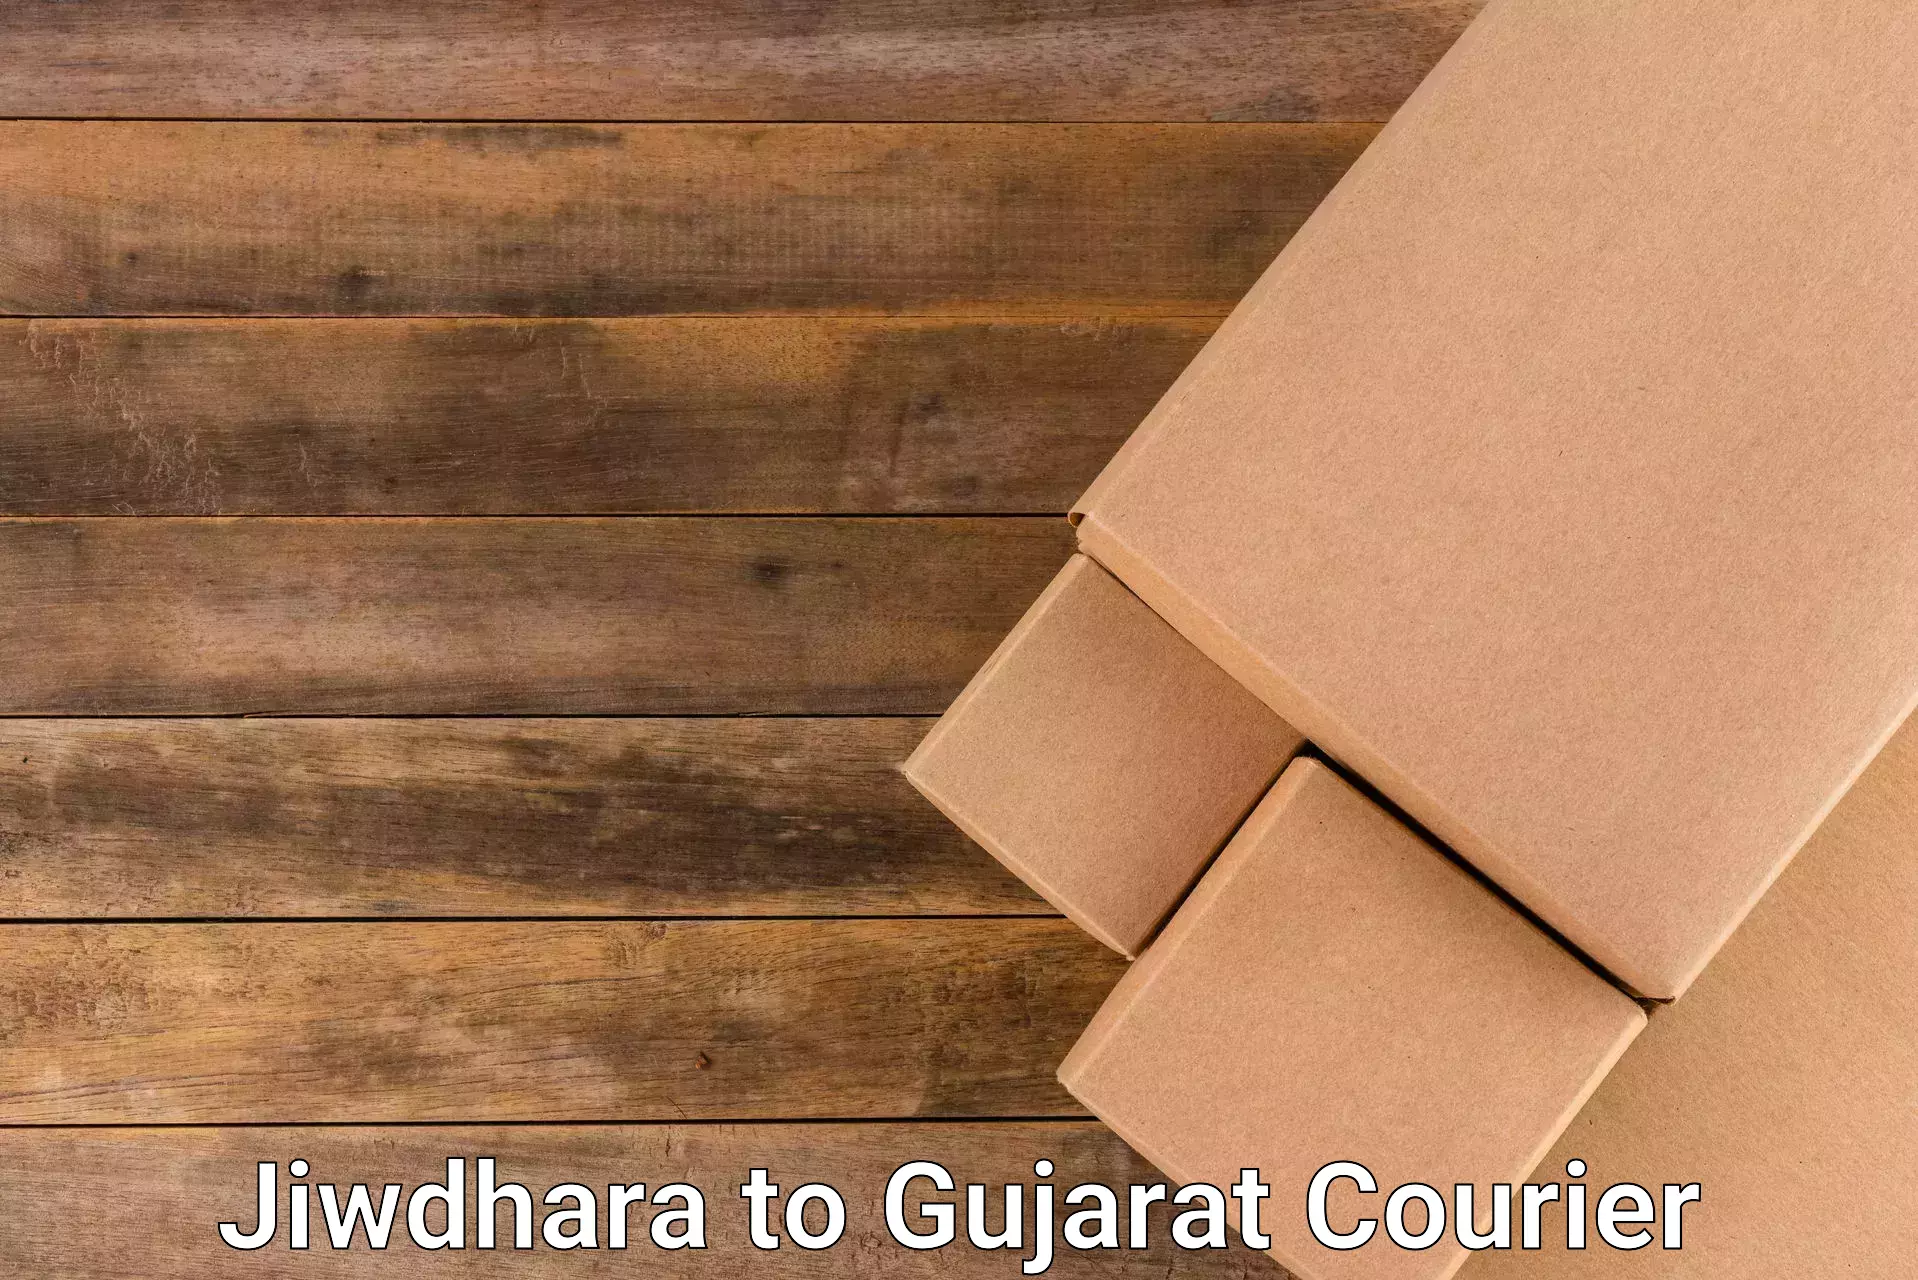 Large package courier Jiwdhara to Narmada Gujarat